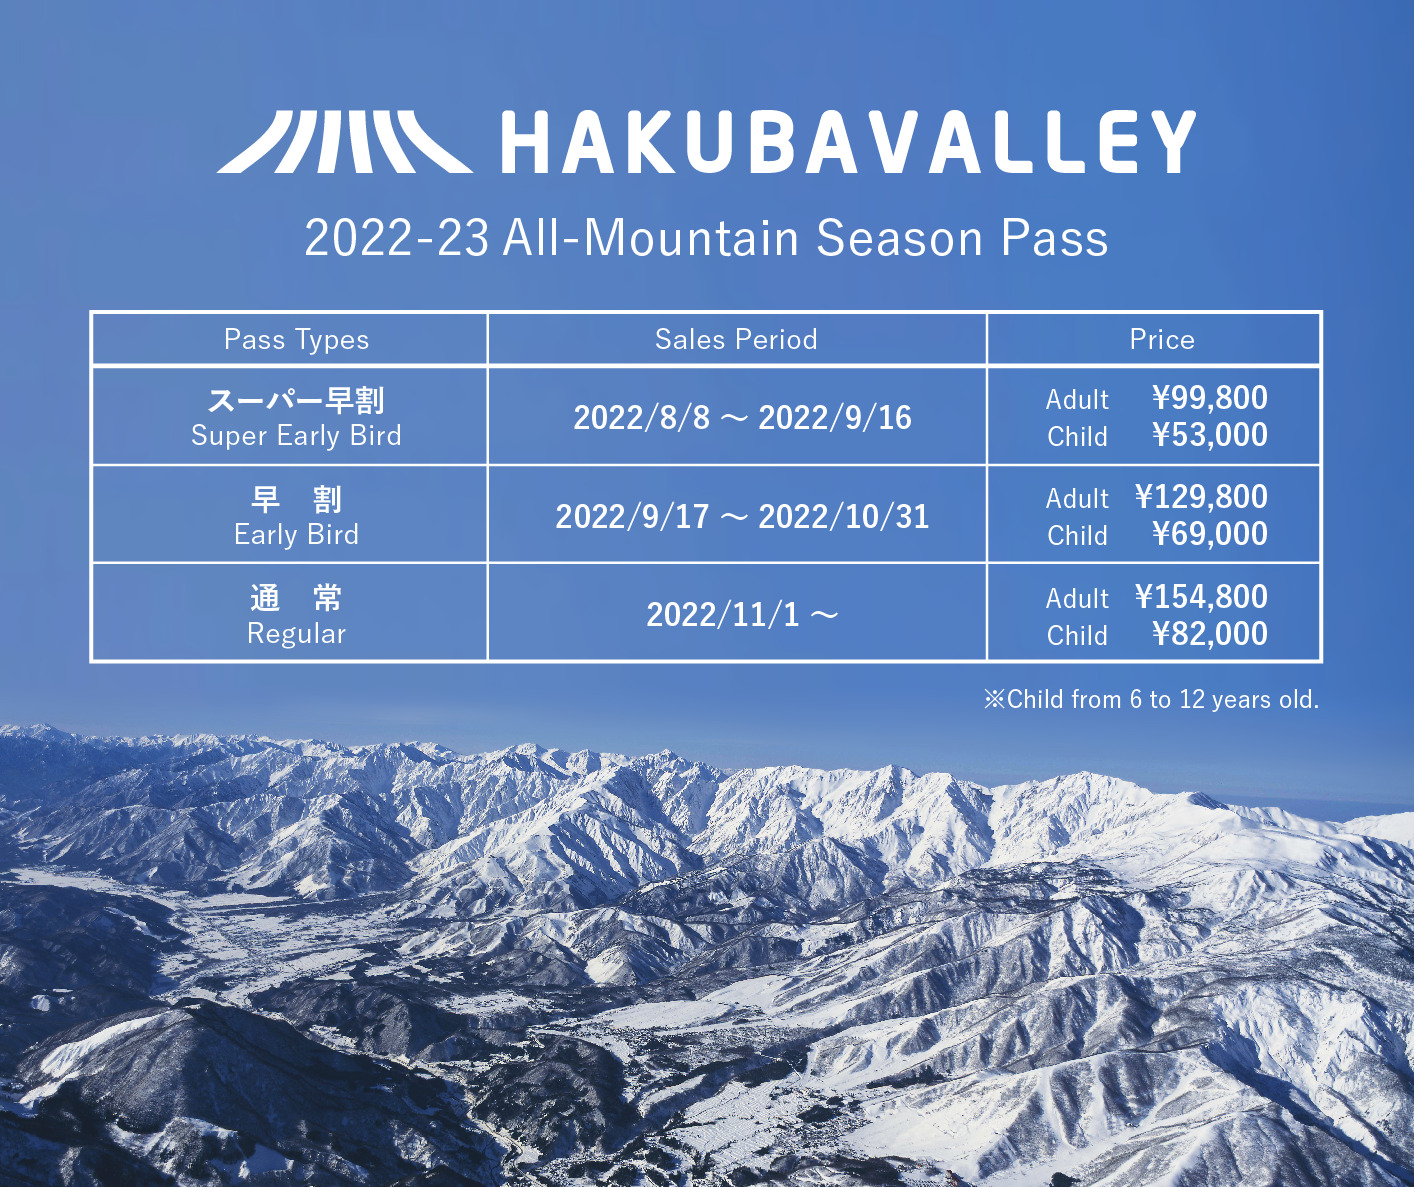 2022-23 Hakuba Valley 全山共通シーズン券についてのお知らせ